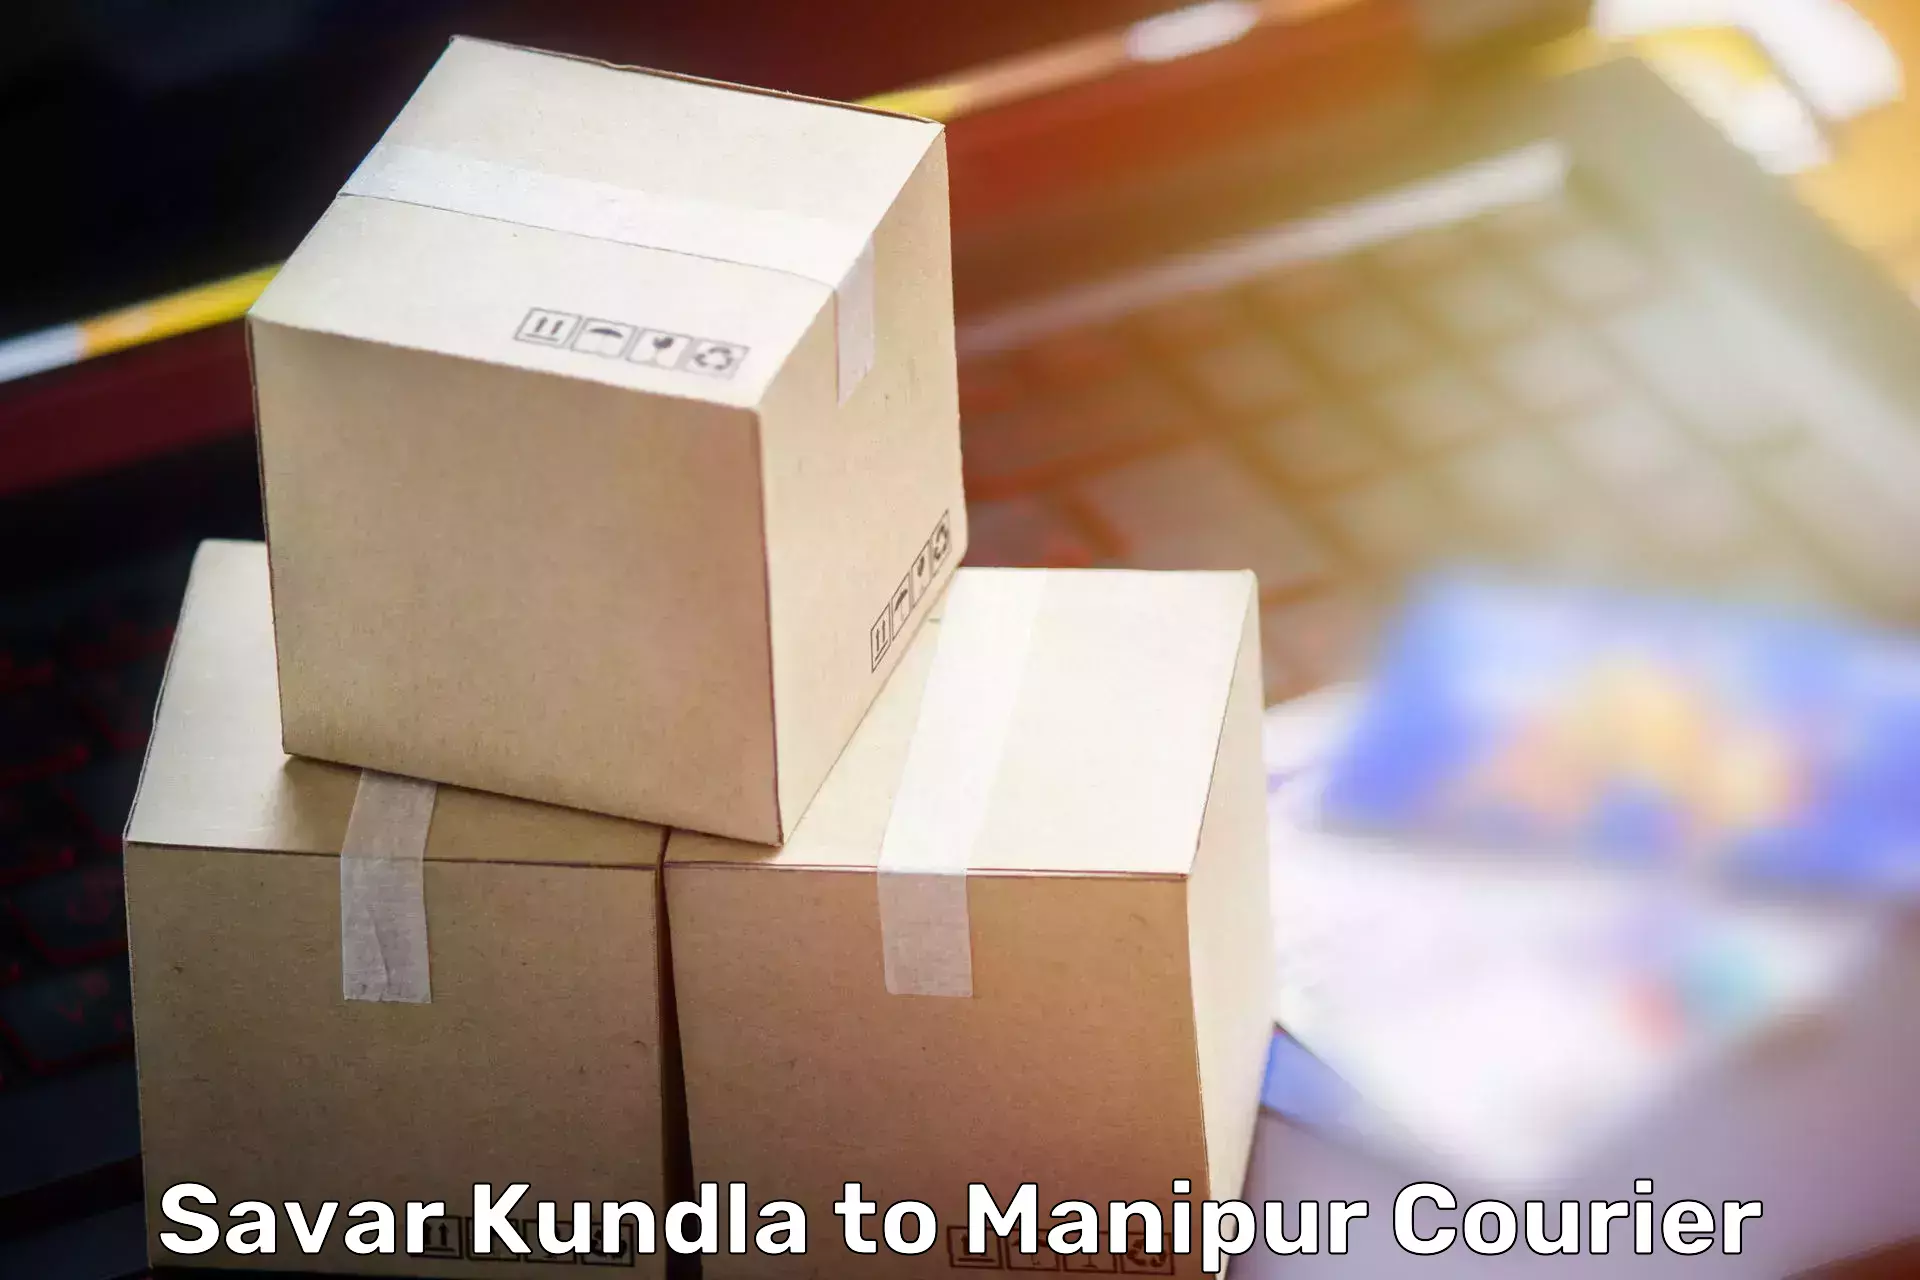 Efficient relocation services Savar Kundla to Churachandpur